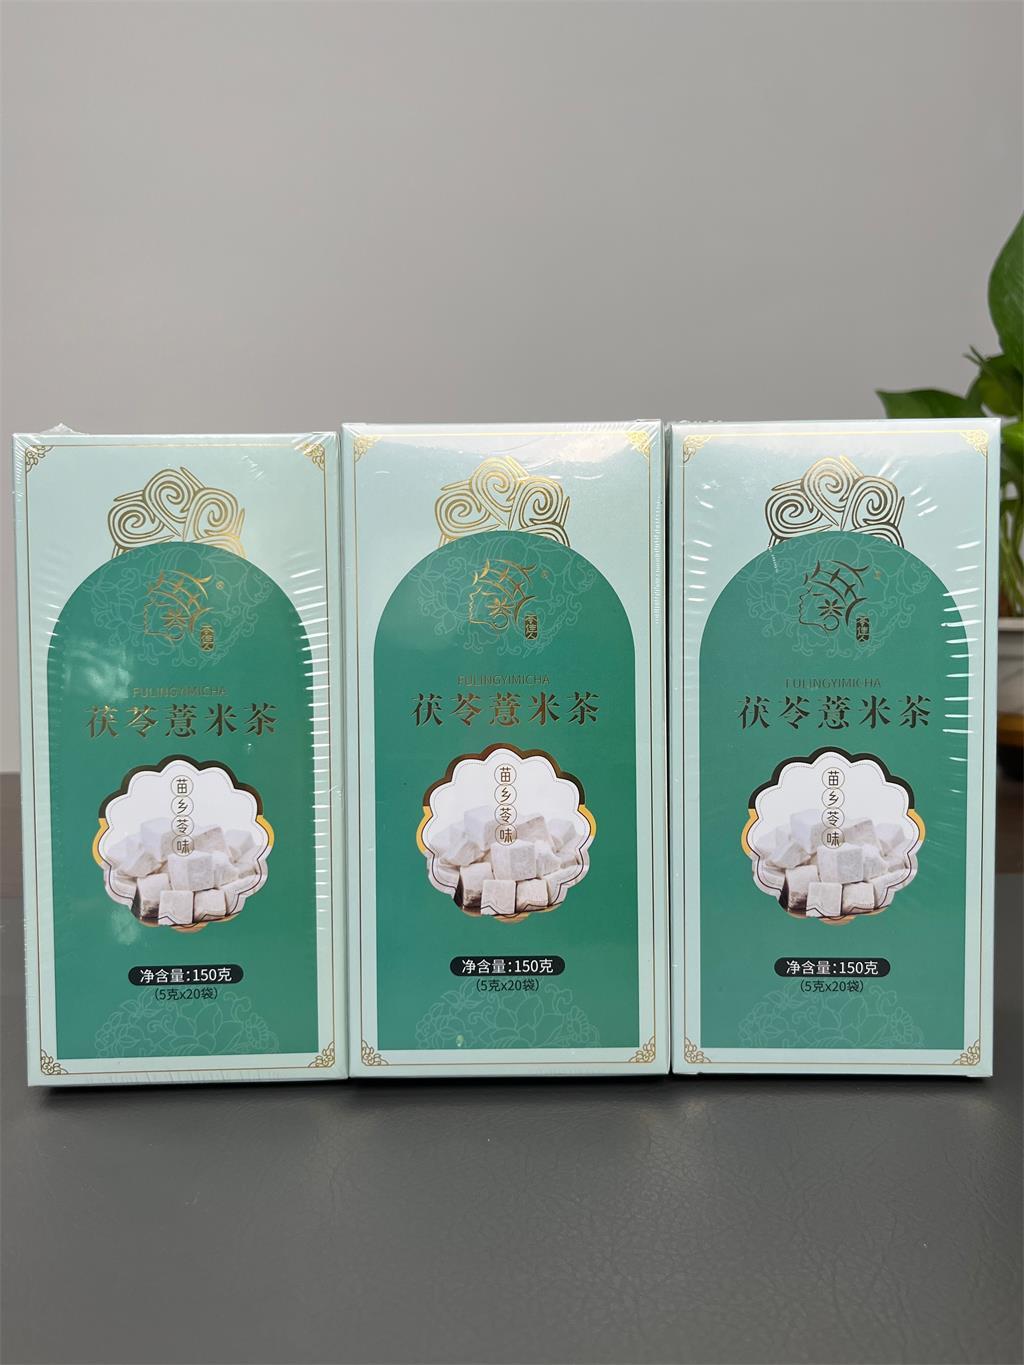 【苓佳人】茯苓薏米茶-靖州国苓科技有限公司